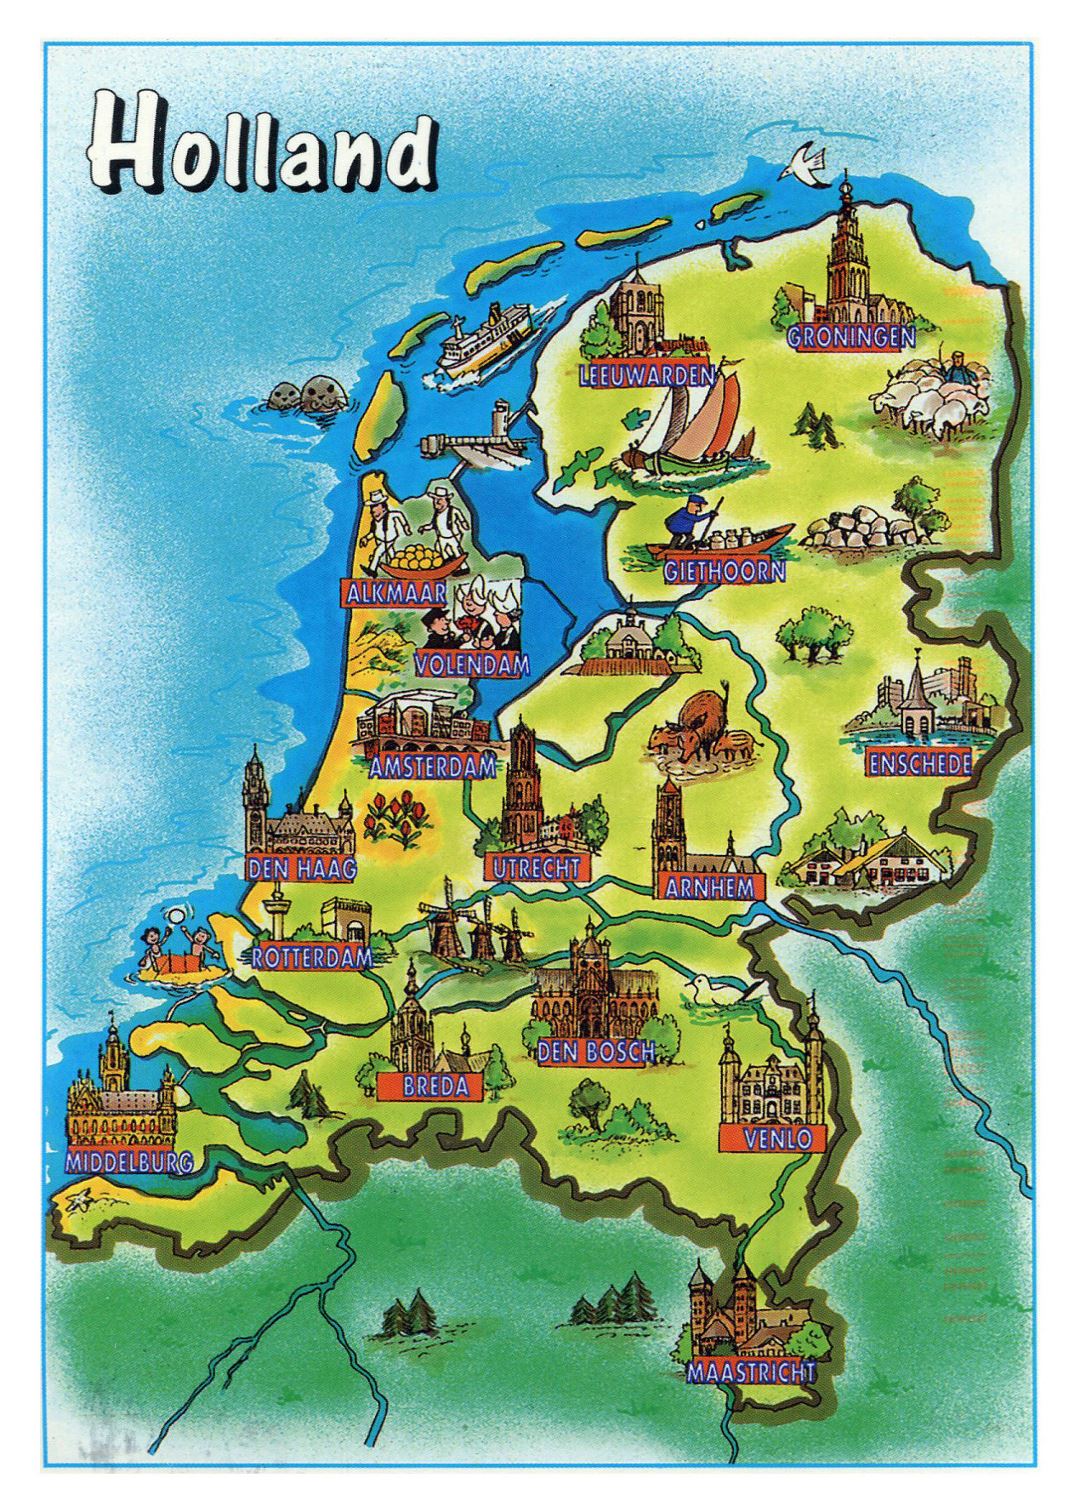 Grande turismo ilustrado mapa de Países Bajos (Holanda)